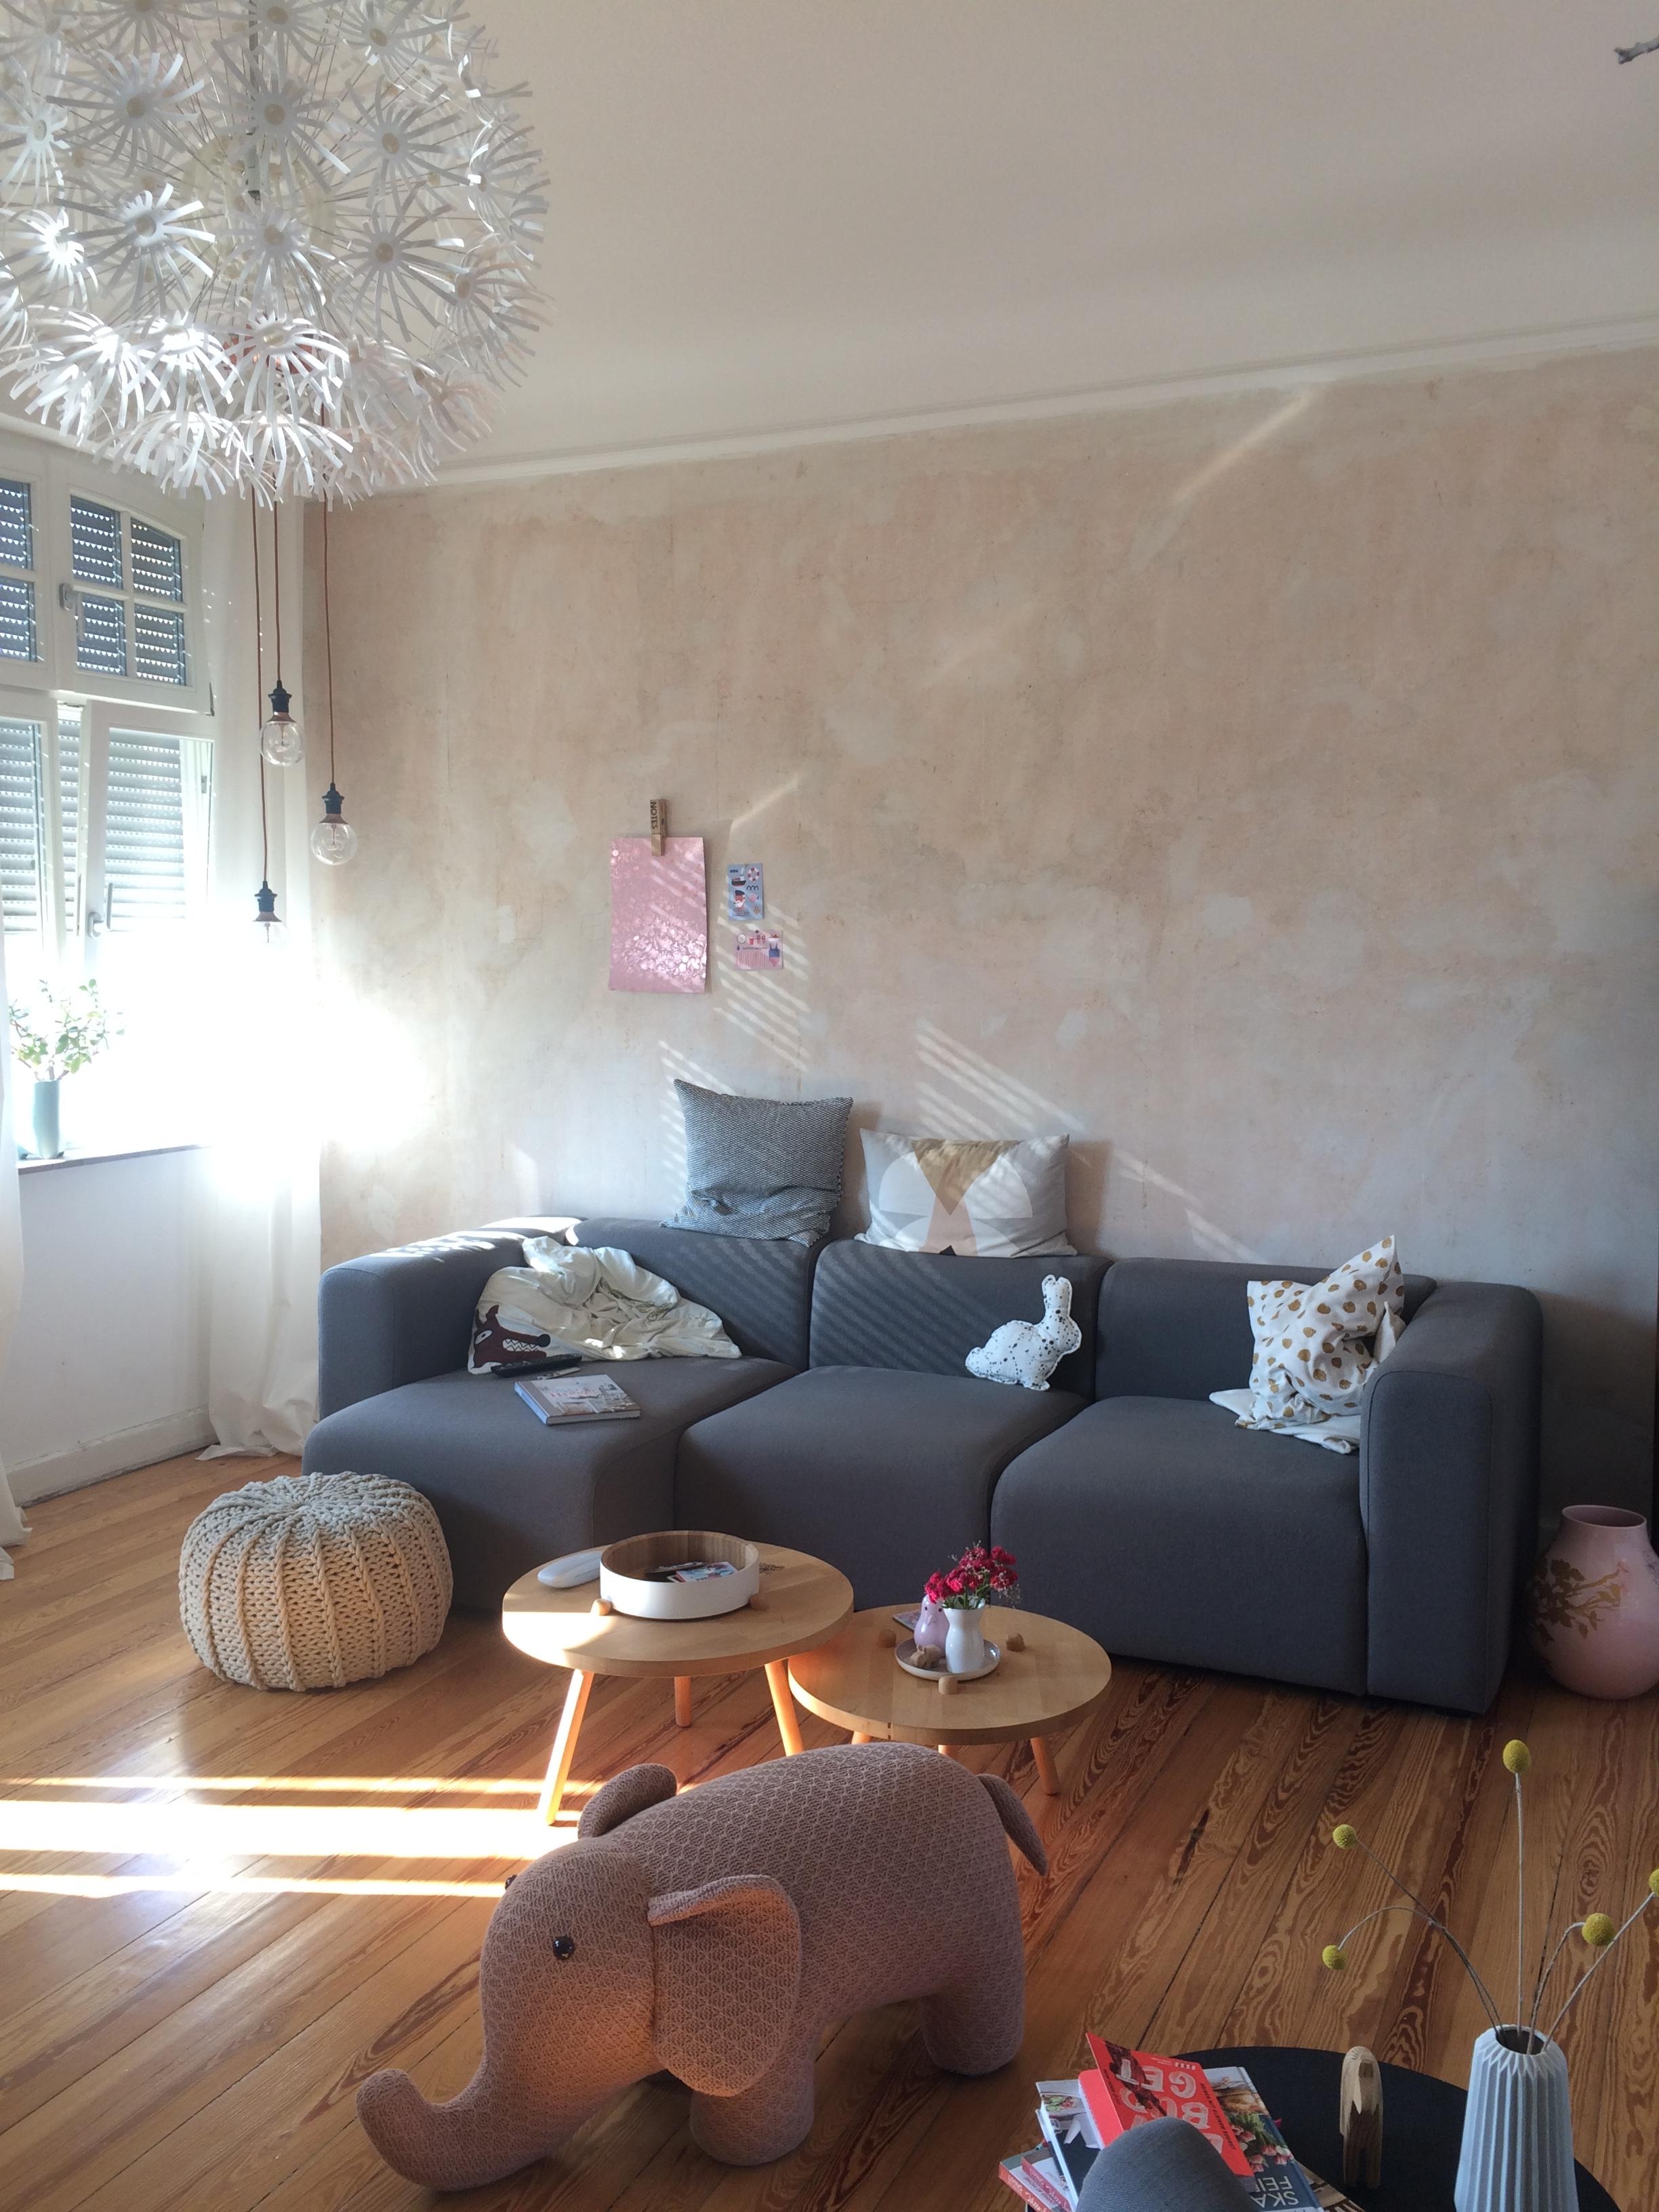 Letzte Sommersonnenstrahlen. #wohnzimmer #living #interior #scandy #altbau #sommerliebe #hygge #dielenboden #diy